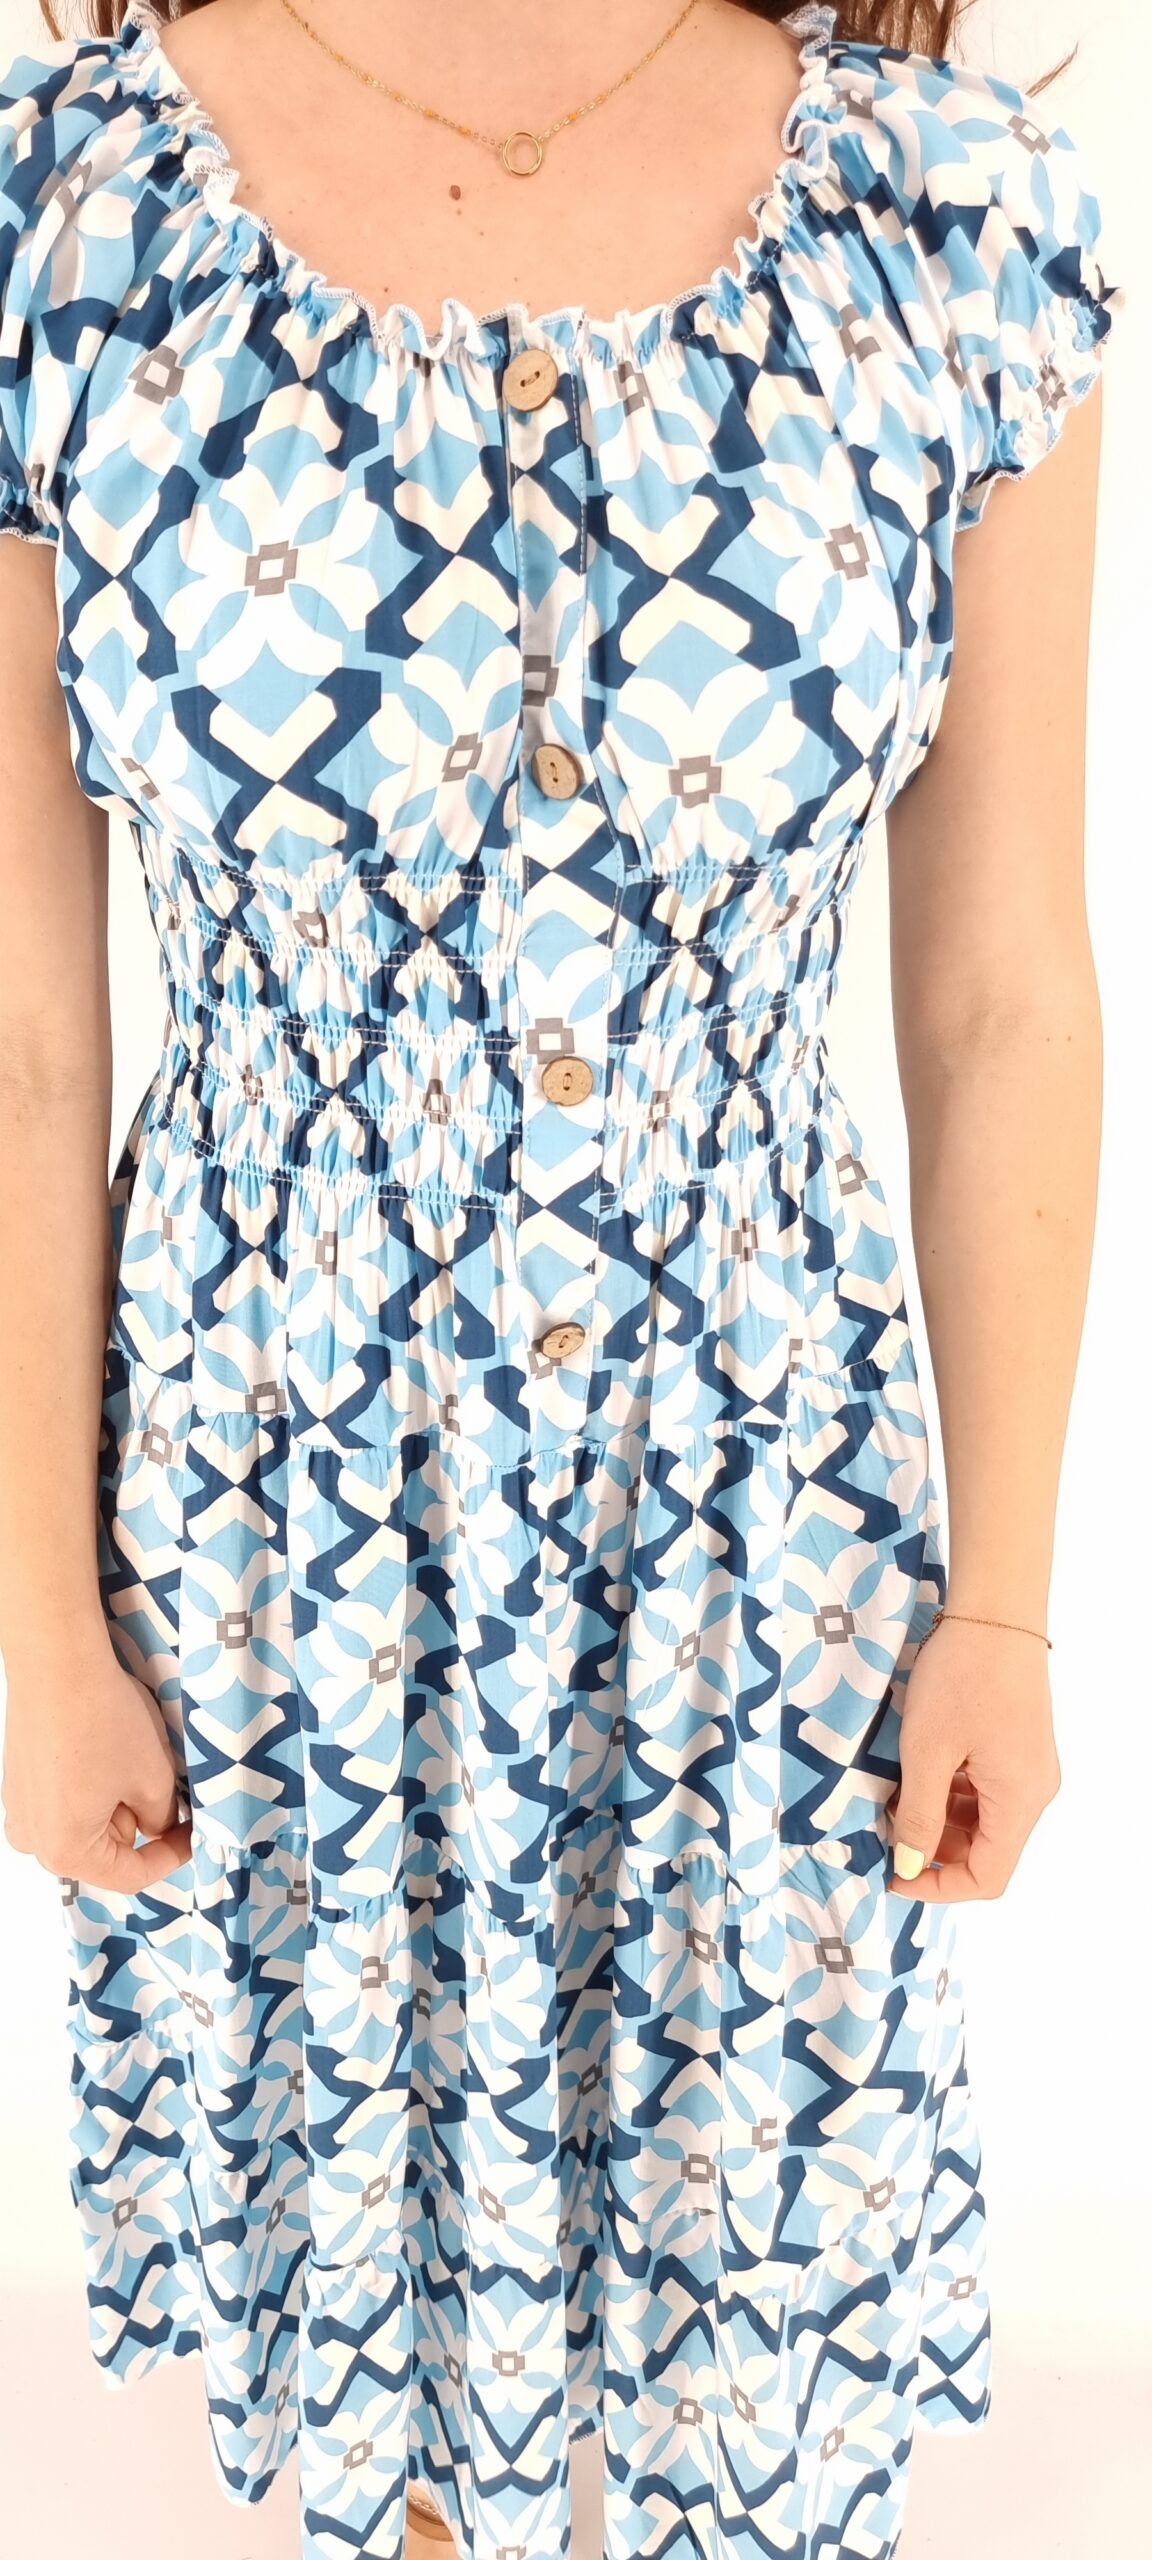 Φόρεμα με σχέδια midi με σφιγγοφωλιά και διακοσμητικά κουμπιά γαλάζιο